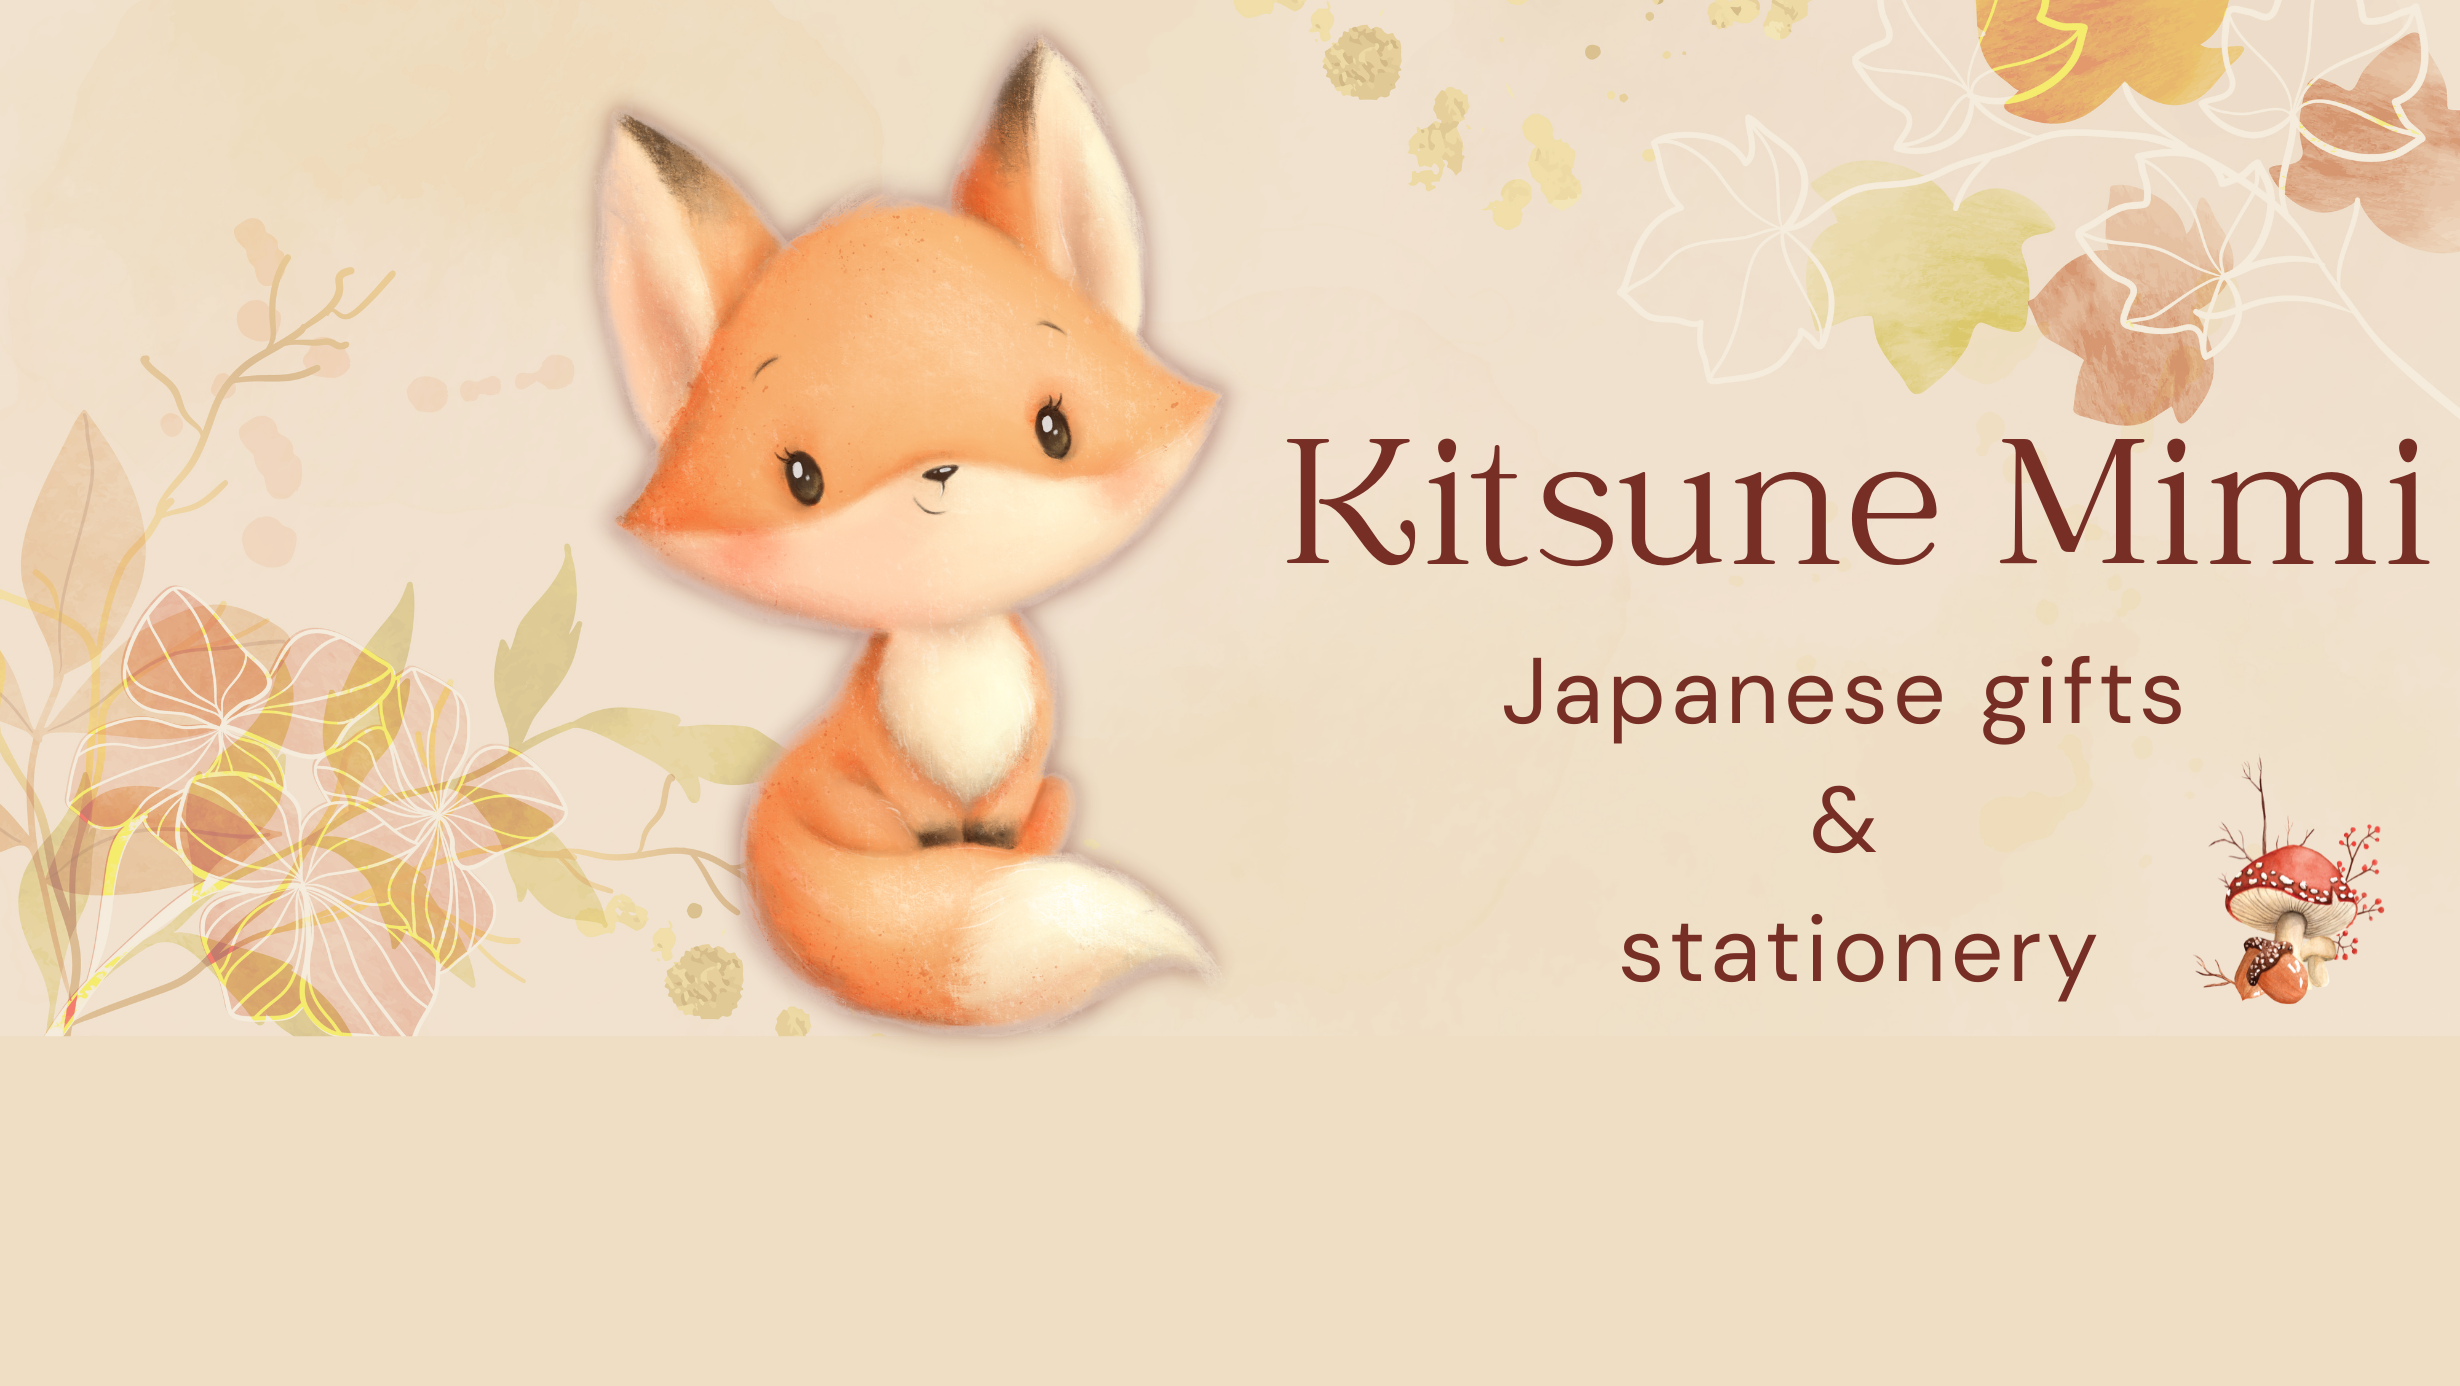 Kitsune Mimi